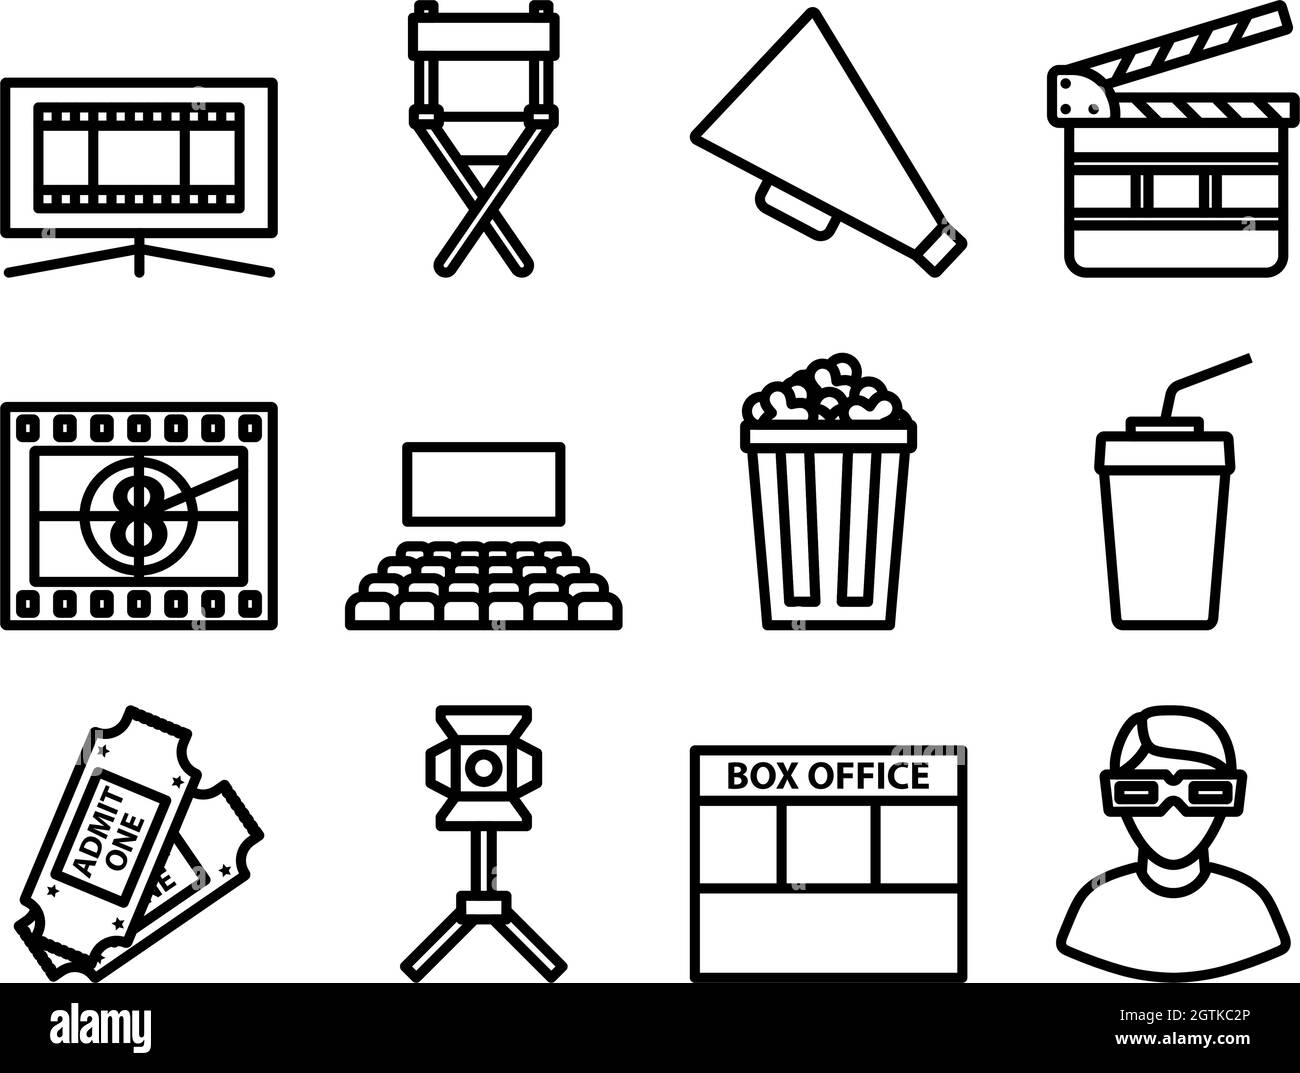 Cinéma Icon Set Illustration de Vecteur